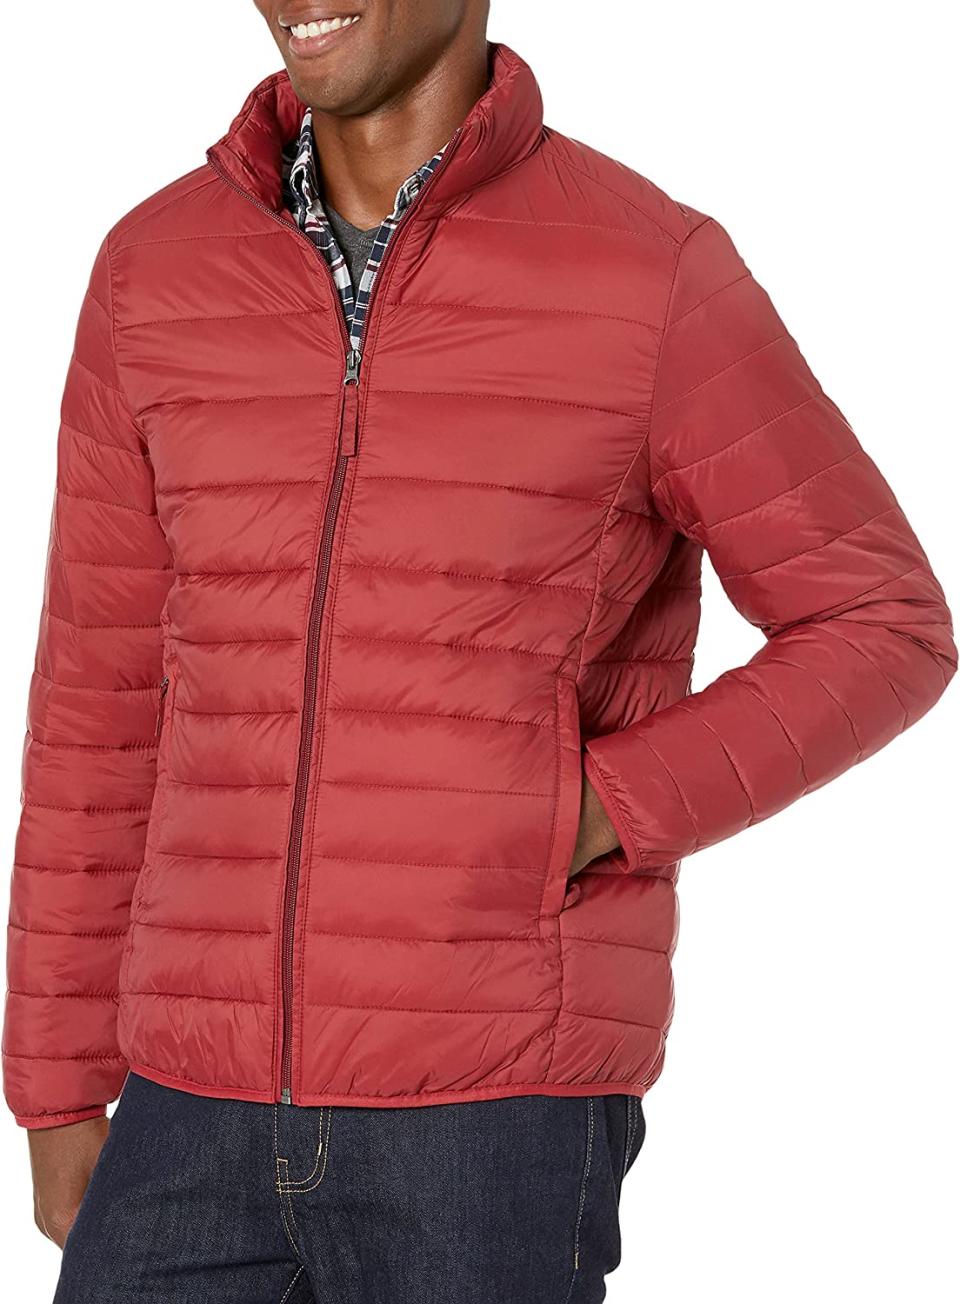 Amazon Essentials Men's Lightweight Water-Resistant Packable Puffer Jacket. Image via Amazon.